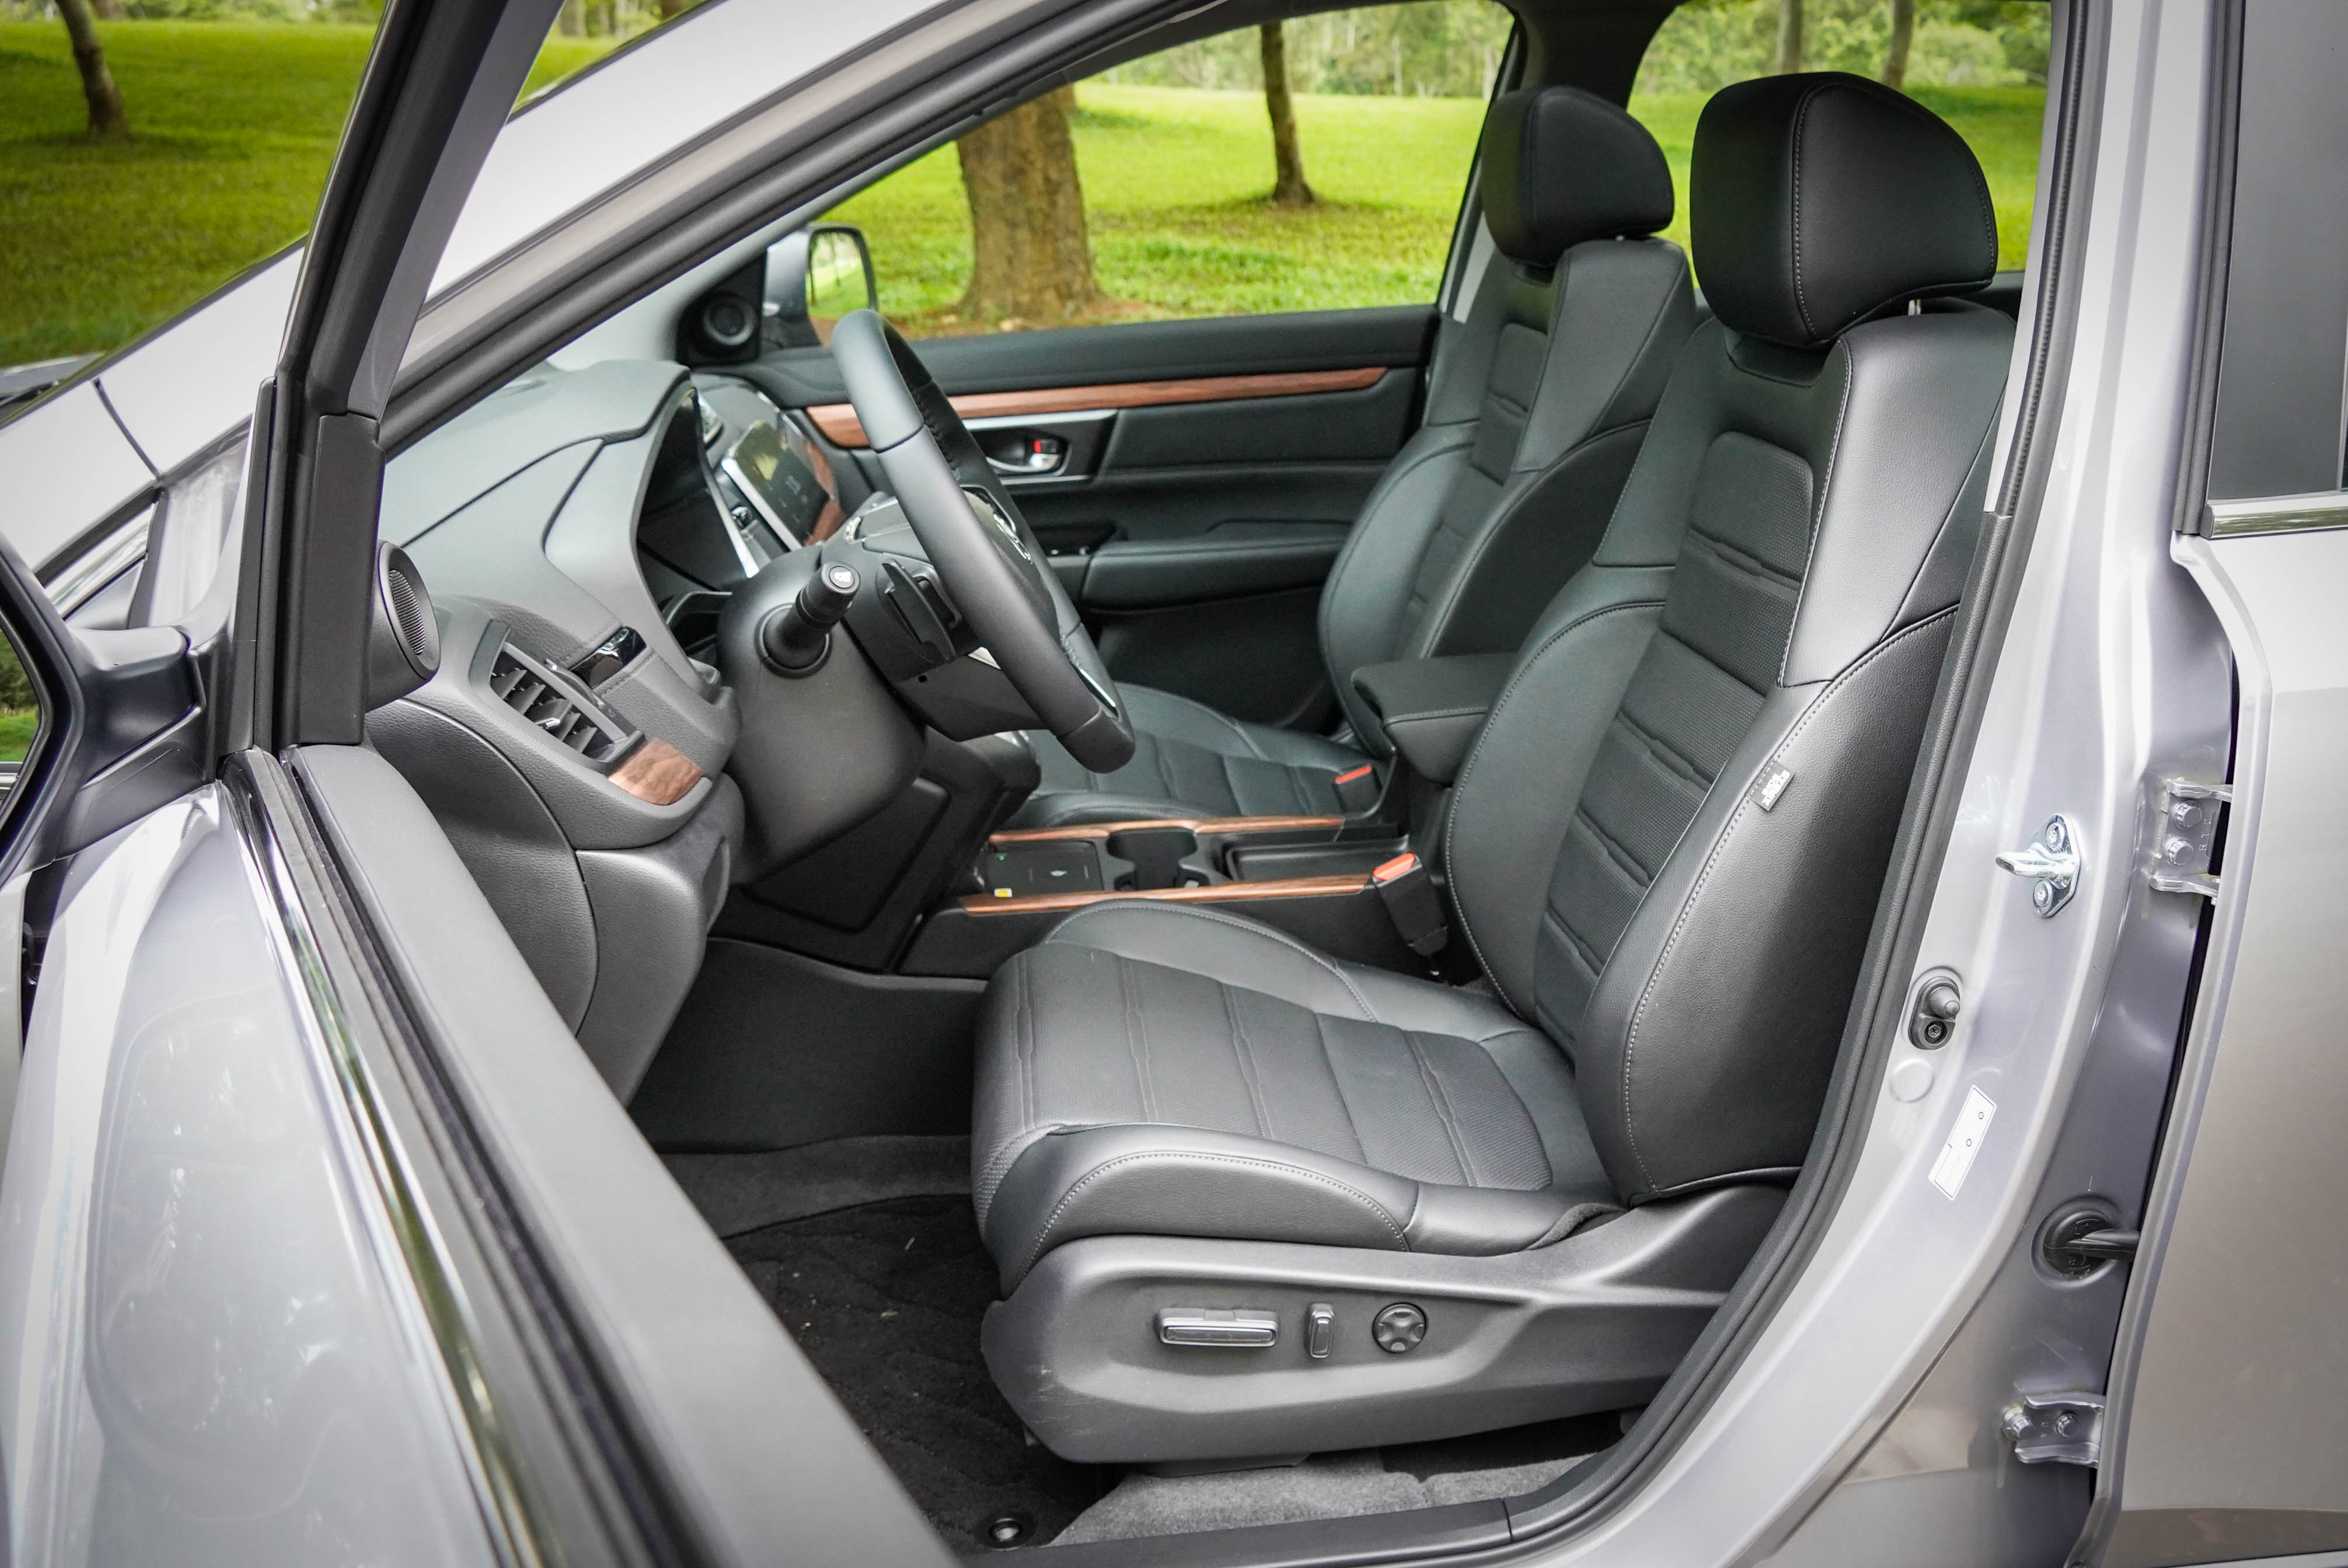 駕駛座 12 向電動座椅調整、副駕駛座4 向電動座椅調整為 S 車型配備。